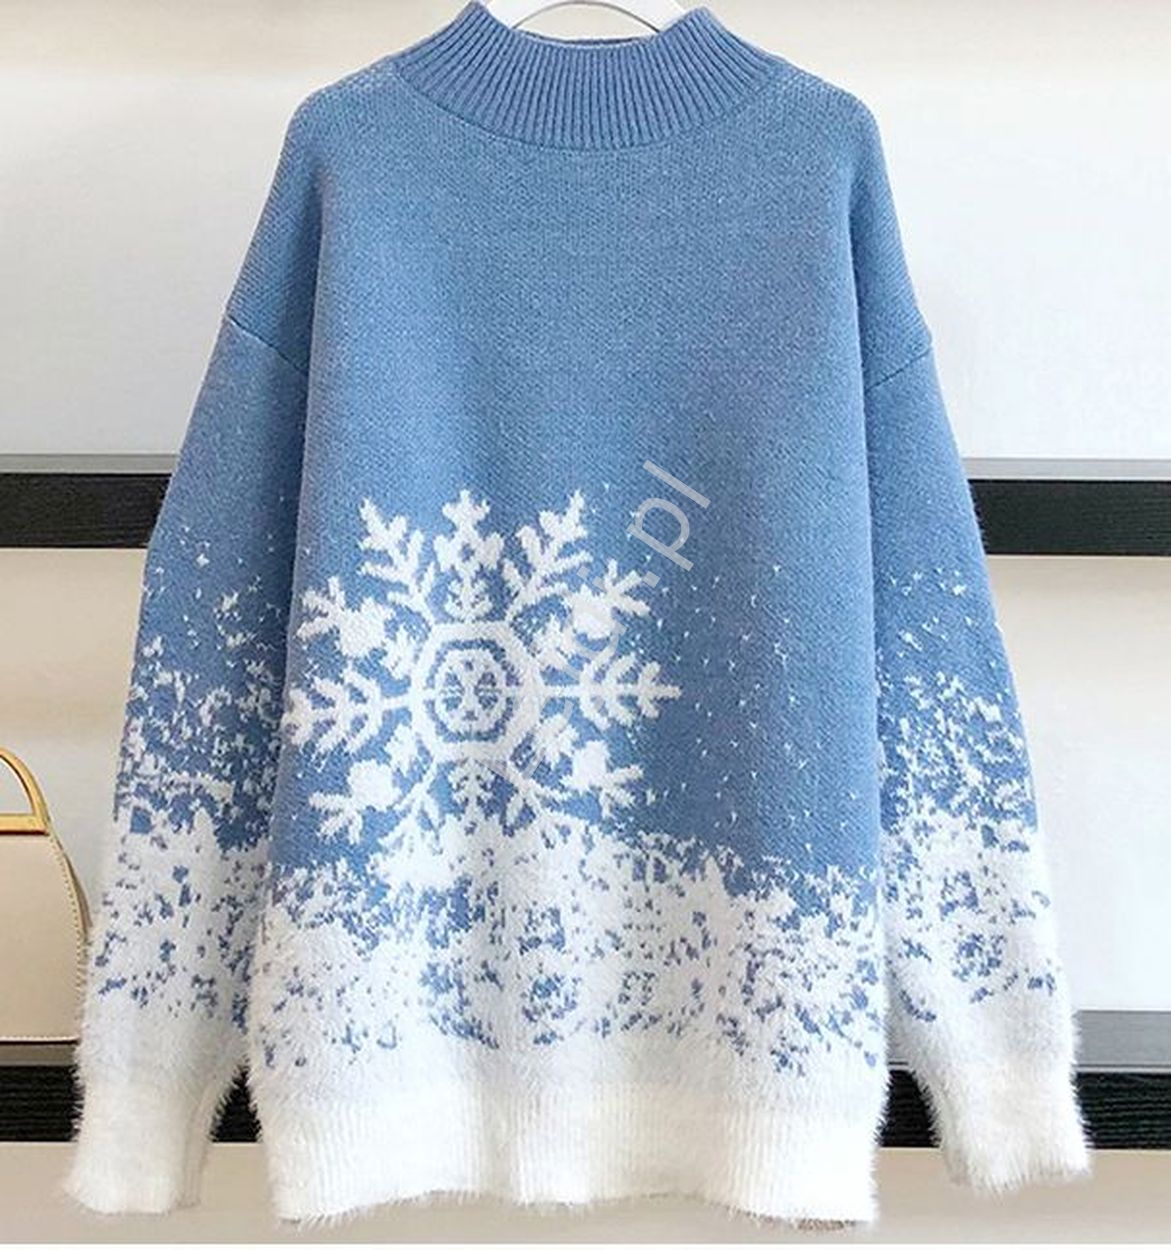 Błękitny sweter świąteczny z białymi śnieżynkami